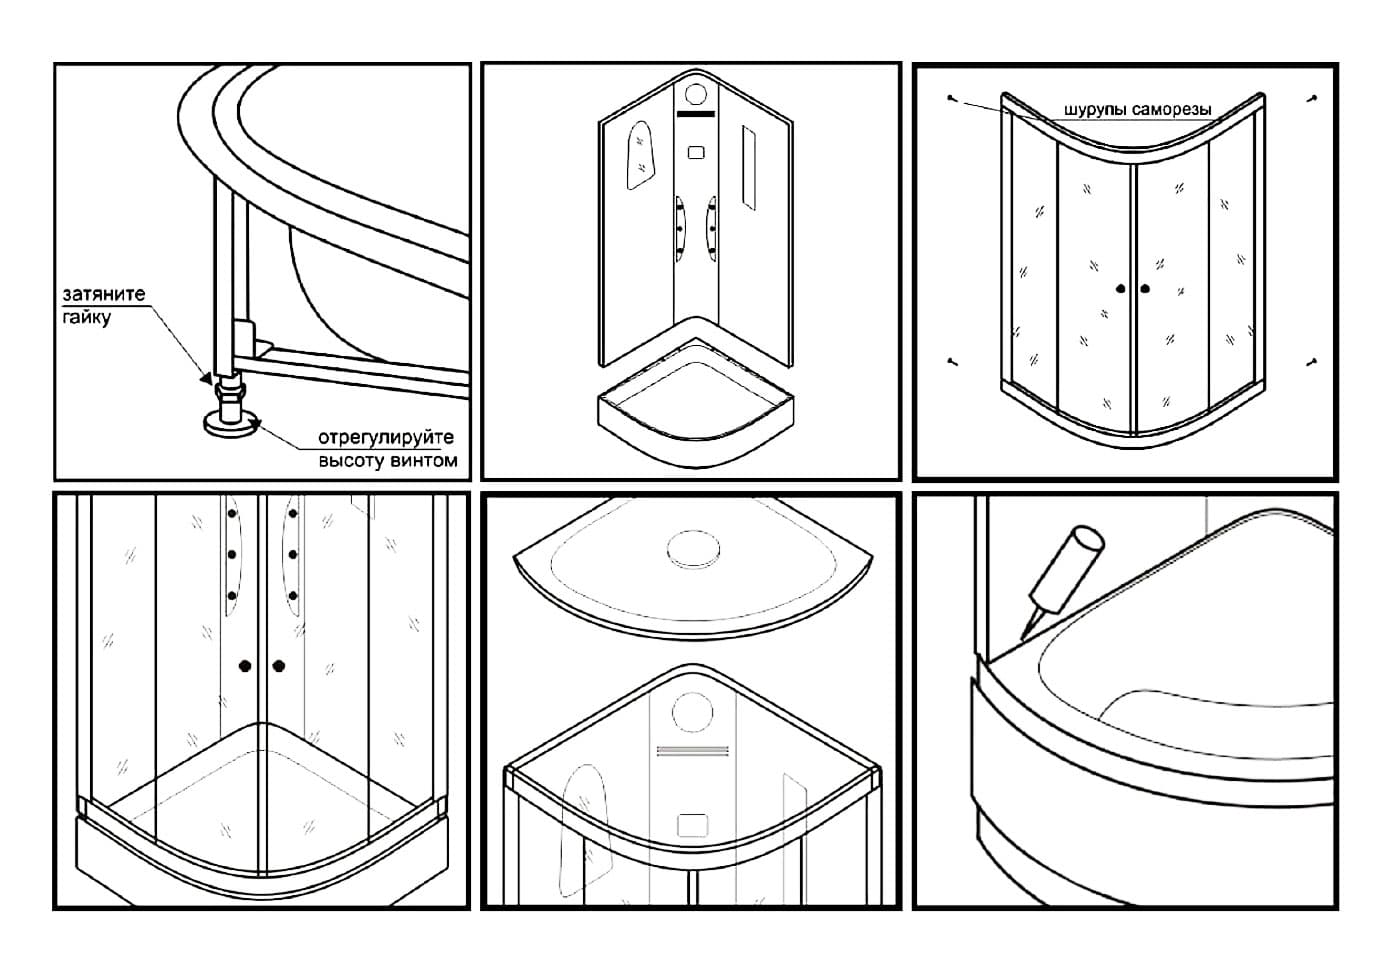 Инструкция по сборке душевой кабины своими руками: на примере китайских моделей, кабин serena и niagara